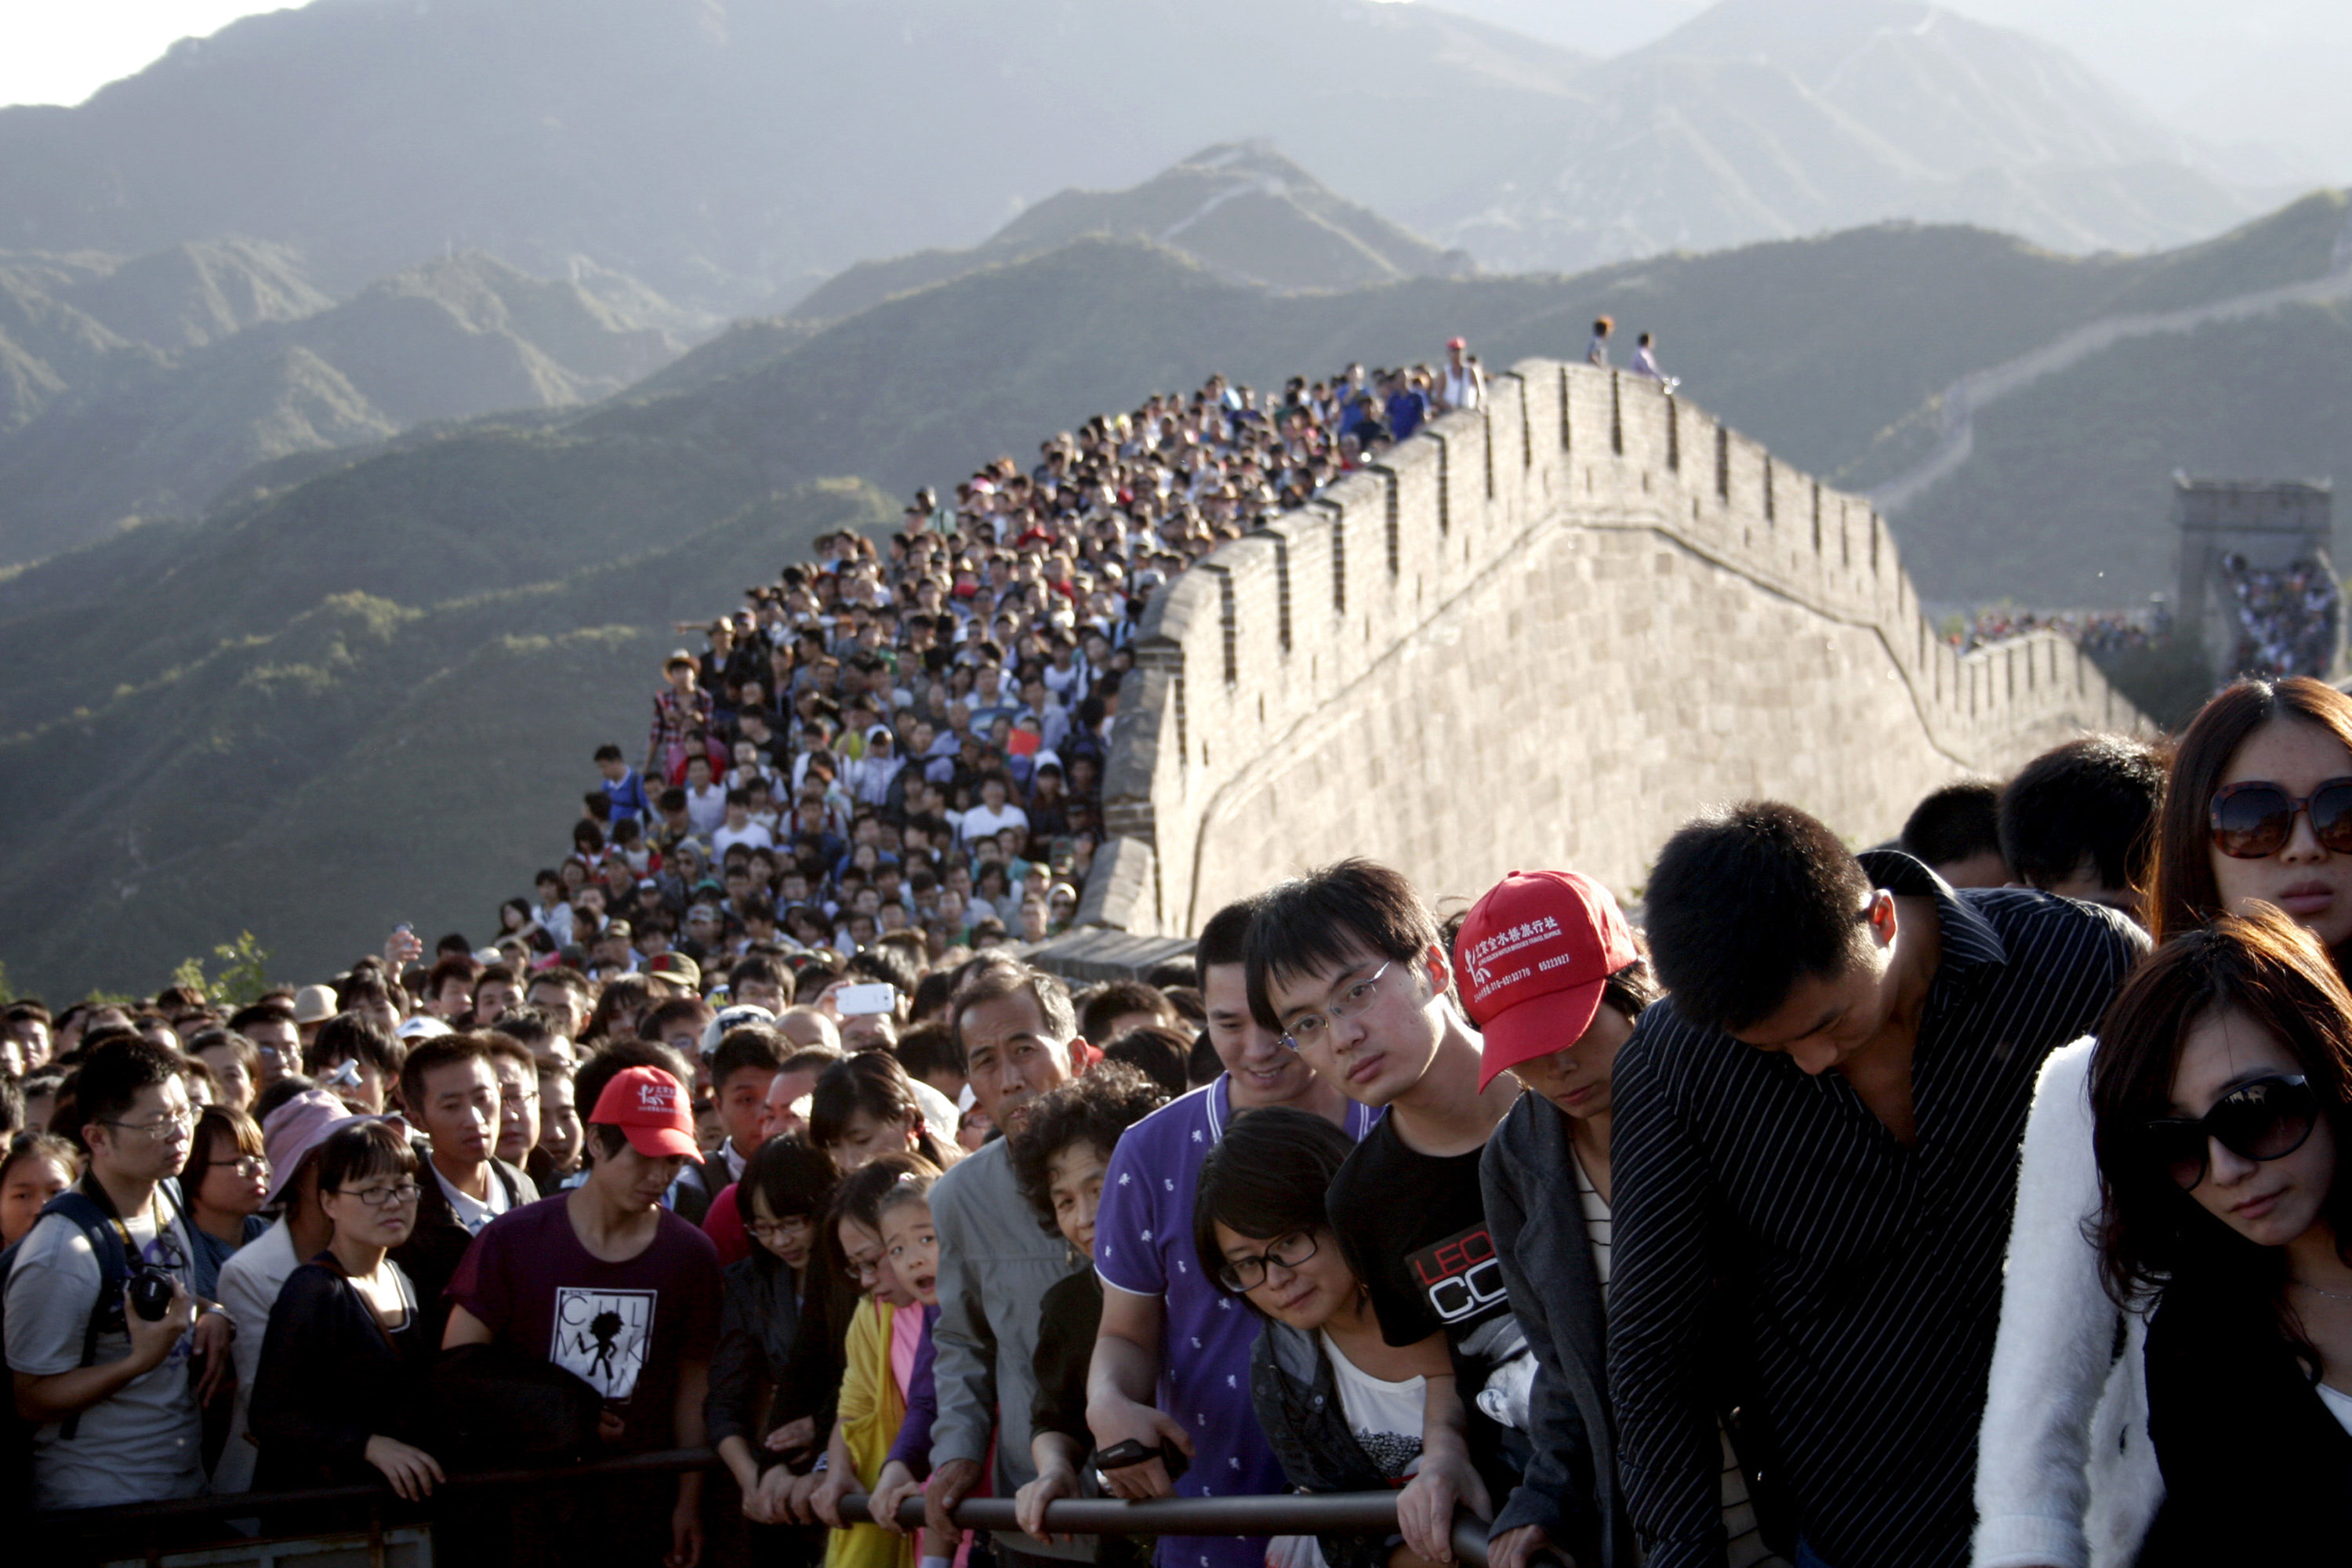 ‘ด่านหวงหยากวน’ อีกด้านของกำแพงเมืองจีนที่โอบล้อมด้วยประวัติศาสตร์และ